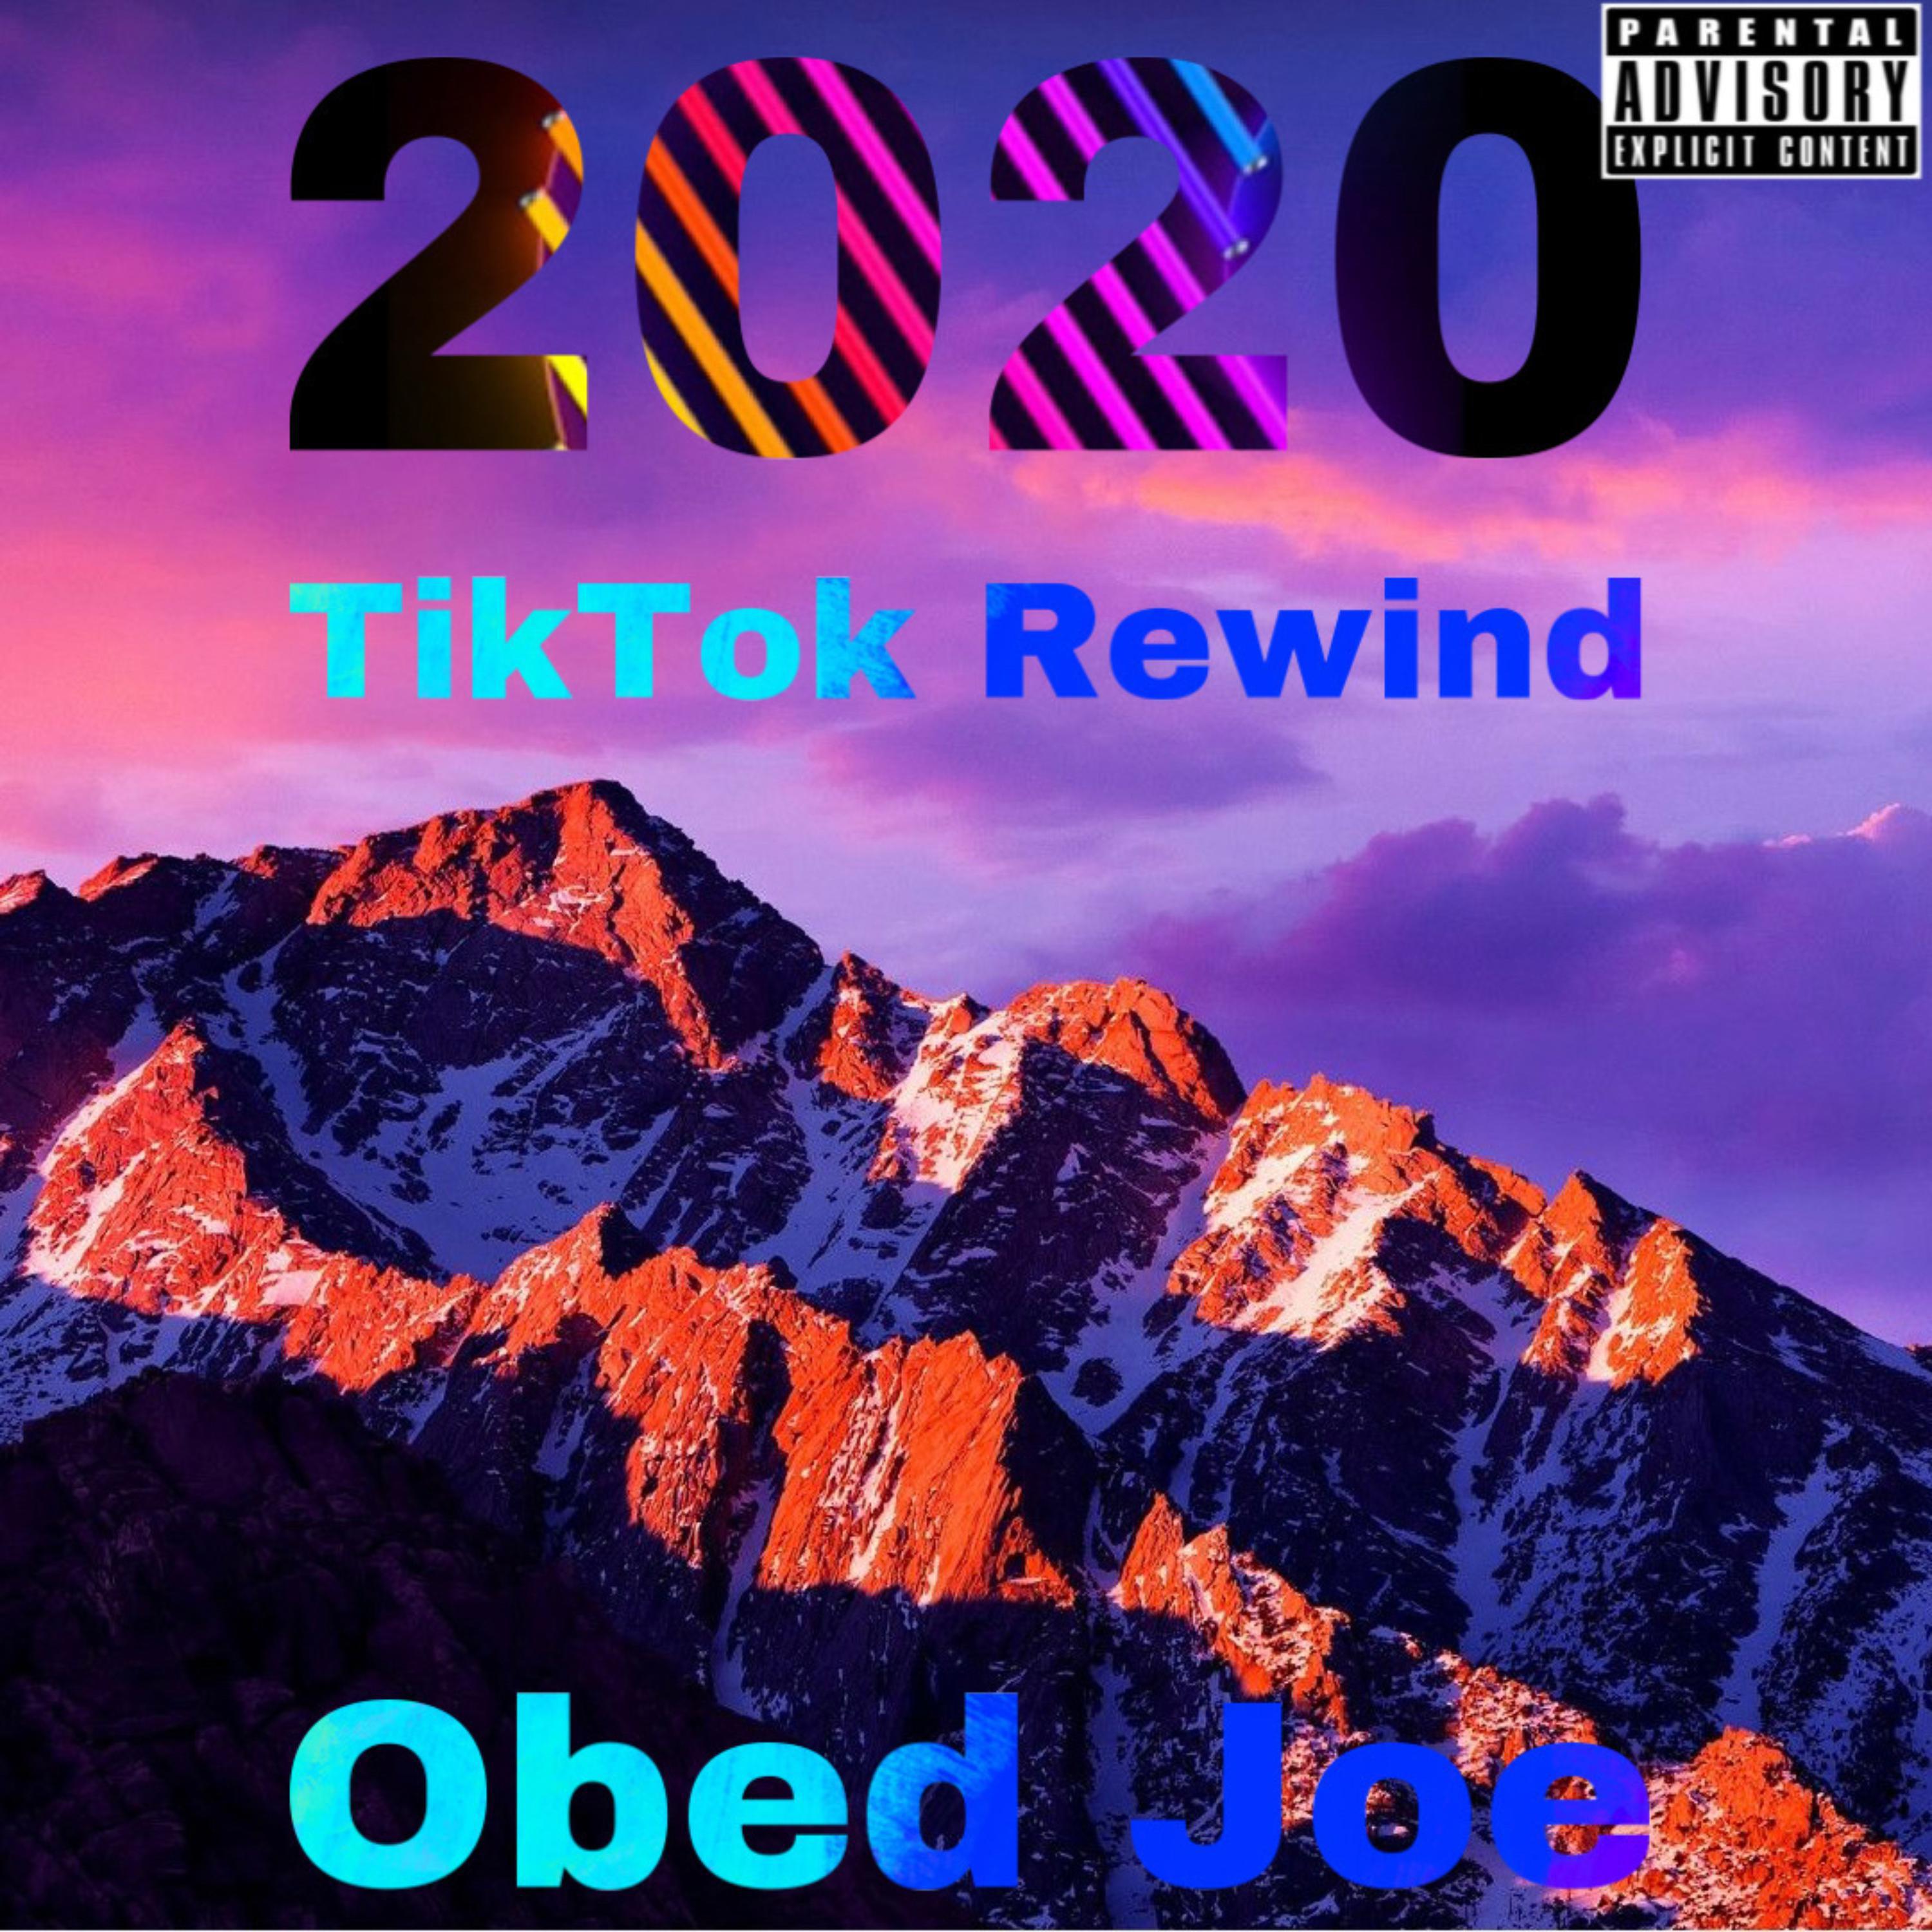 Rewind 2020 FE 2歌词 歌手Obed Joe-专辑Rewind 2020-单曲《Rewind 2020 FE 2》LRC歌词下载